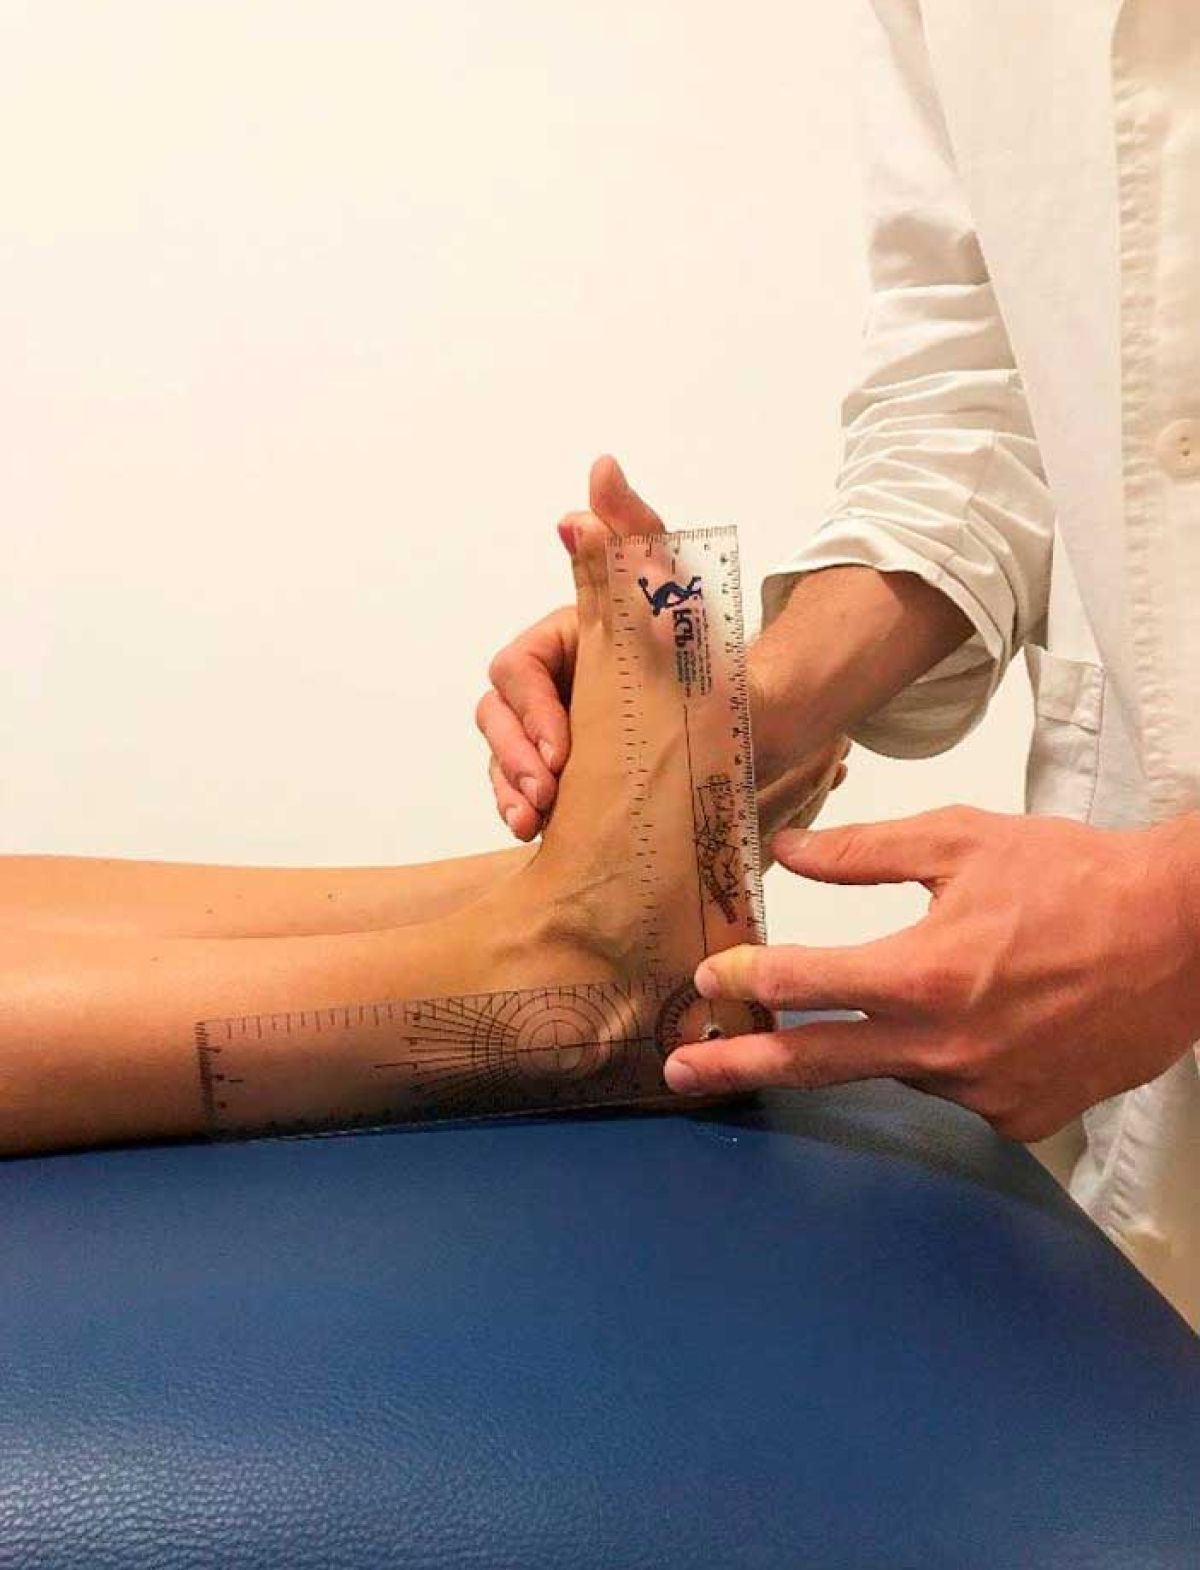 Studio di podologia Voghera, terapie riabilitazioni per i piedi e unghie e Visita biomeccanica e Esame podoscopico, Podogramma.